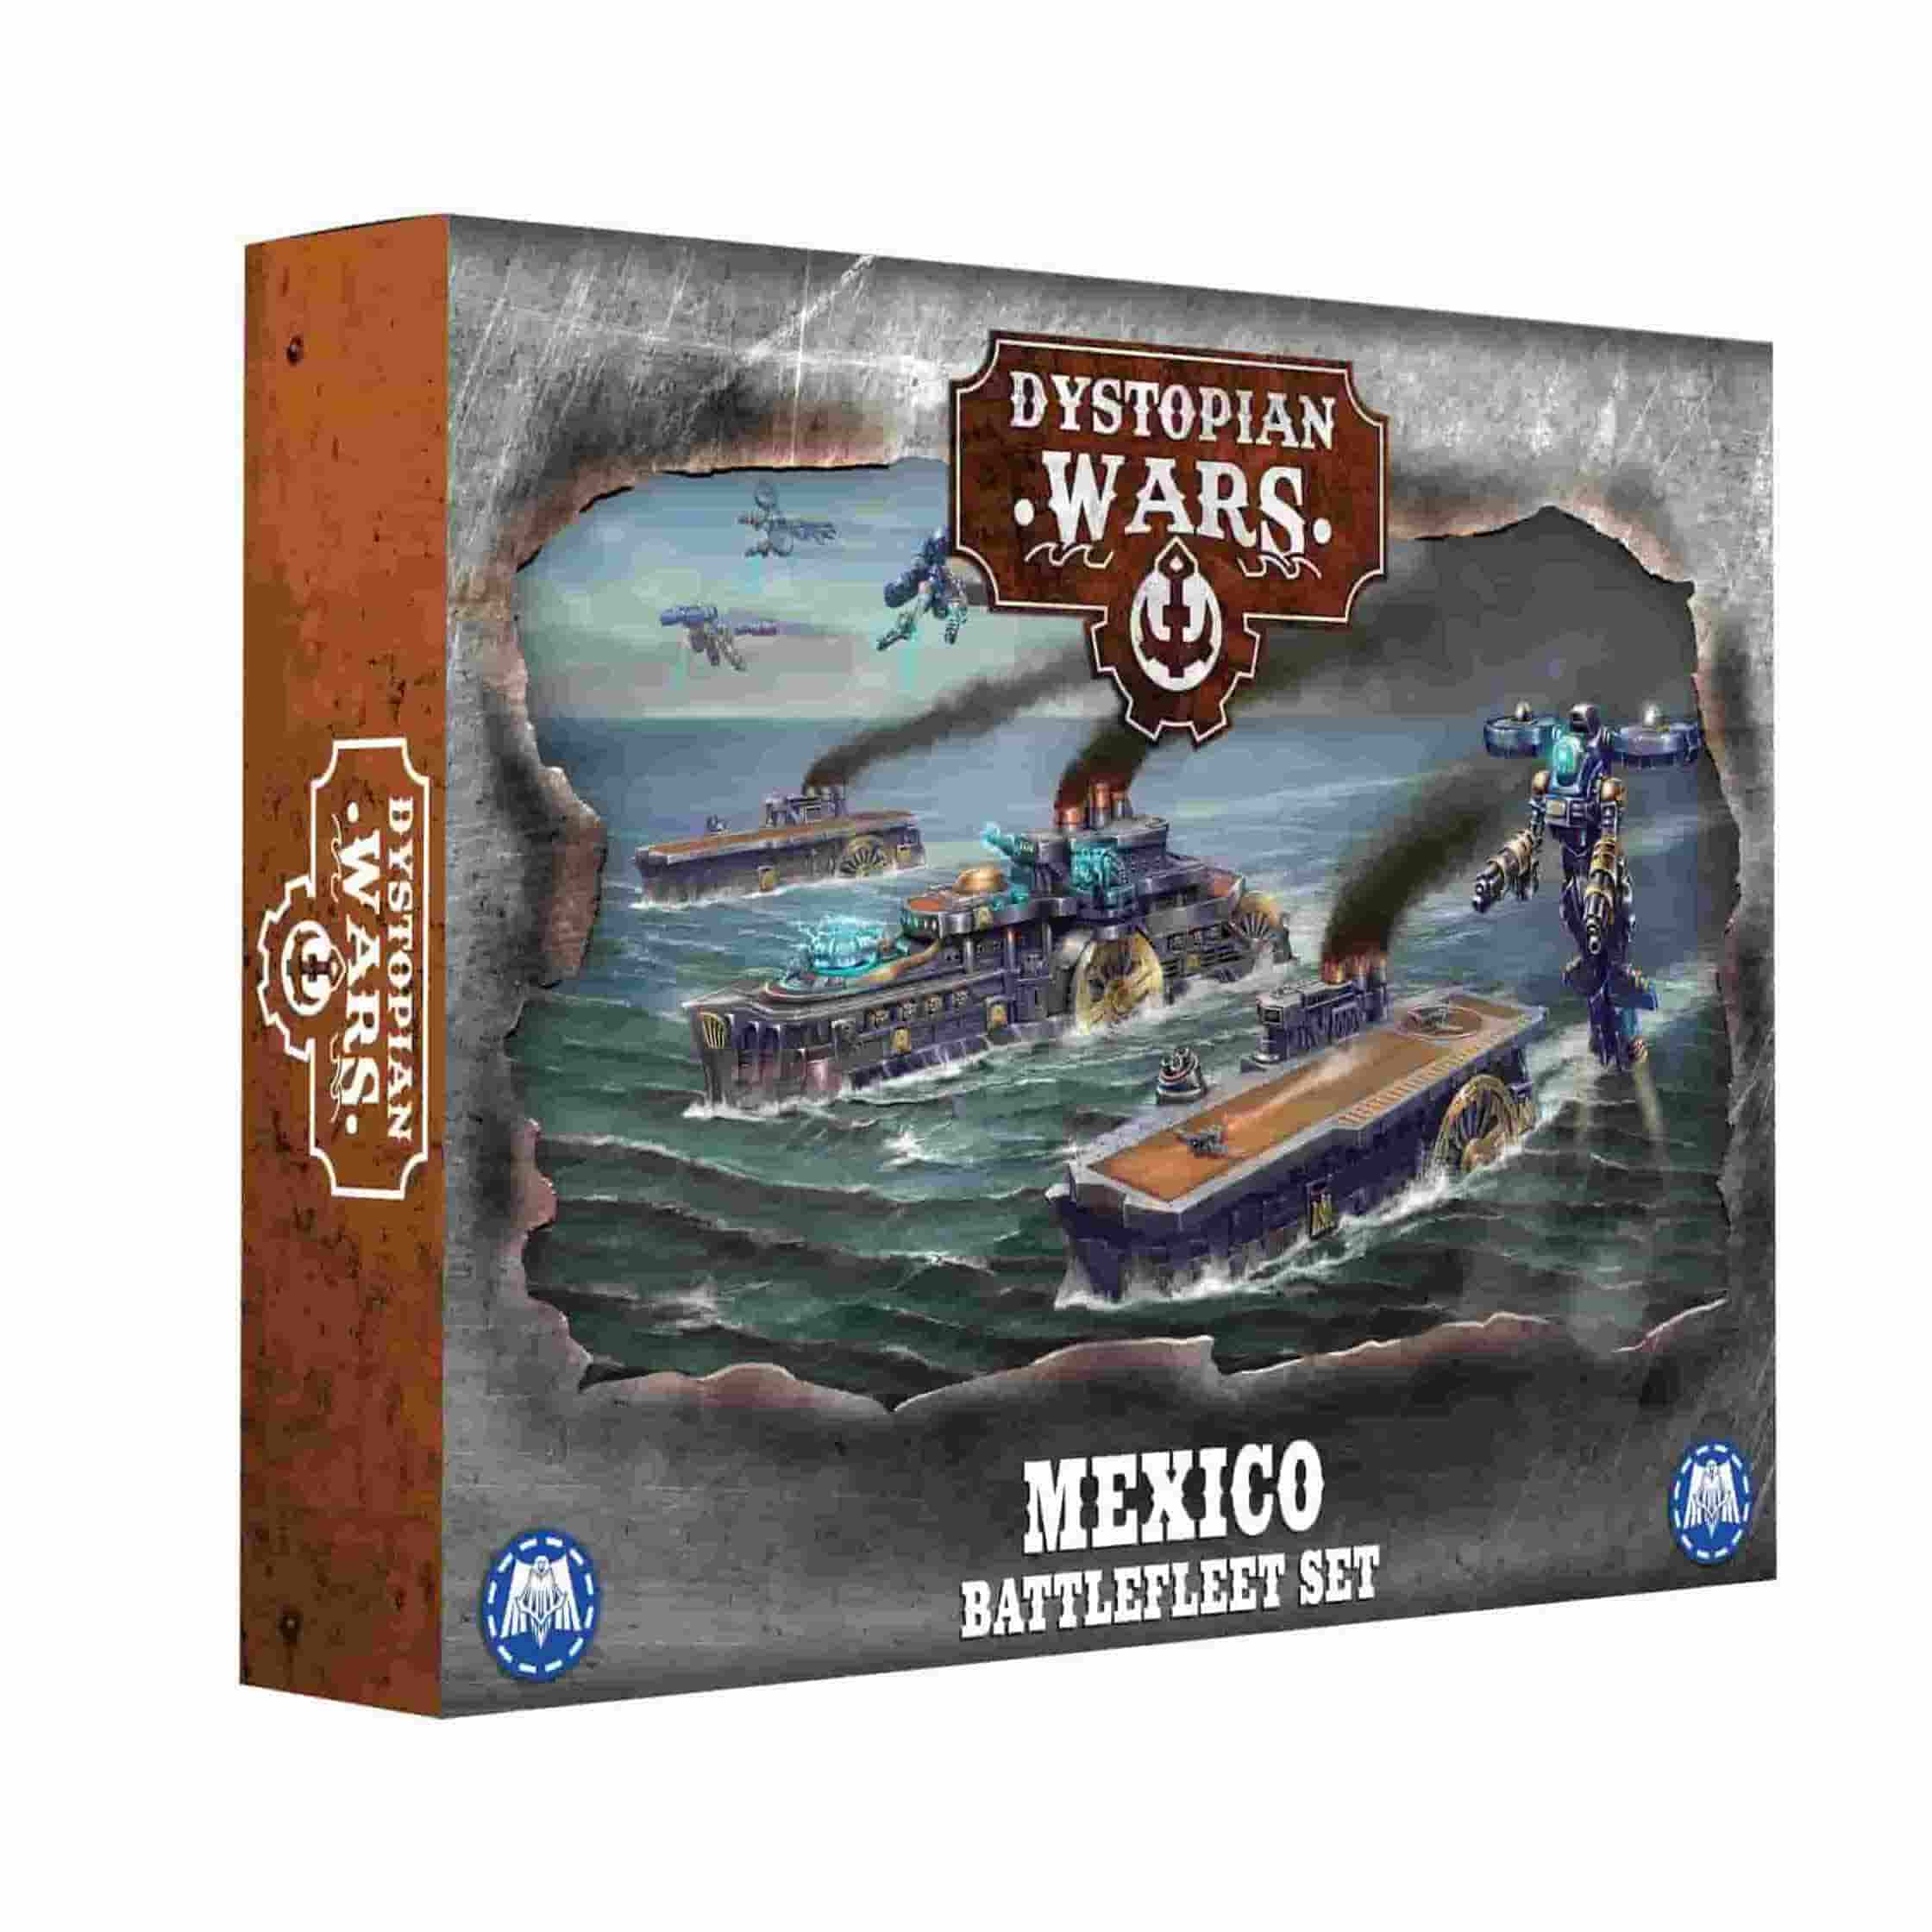 Mexico Battlefleet Set - Box